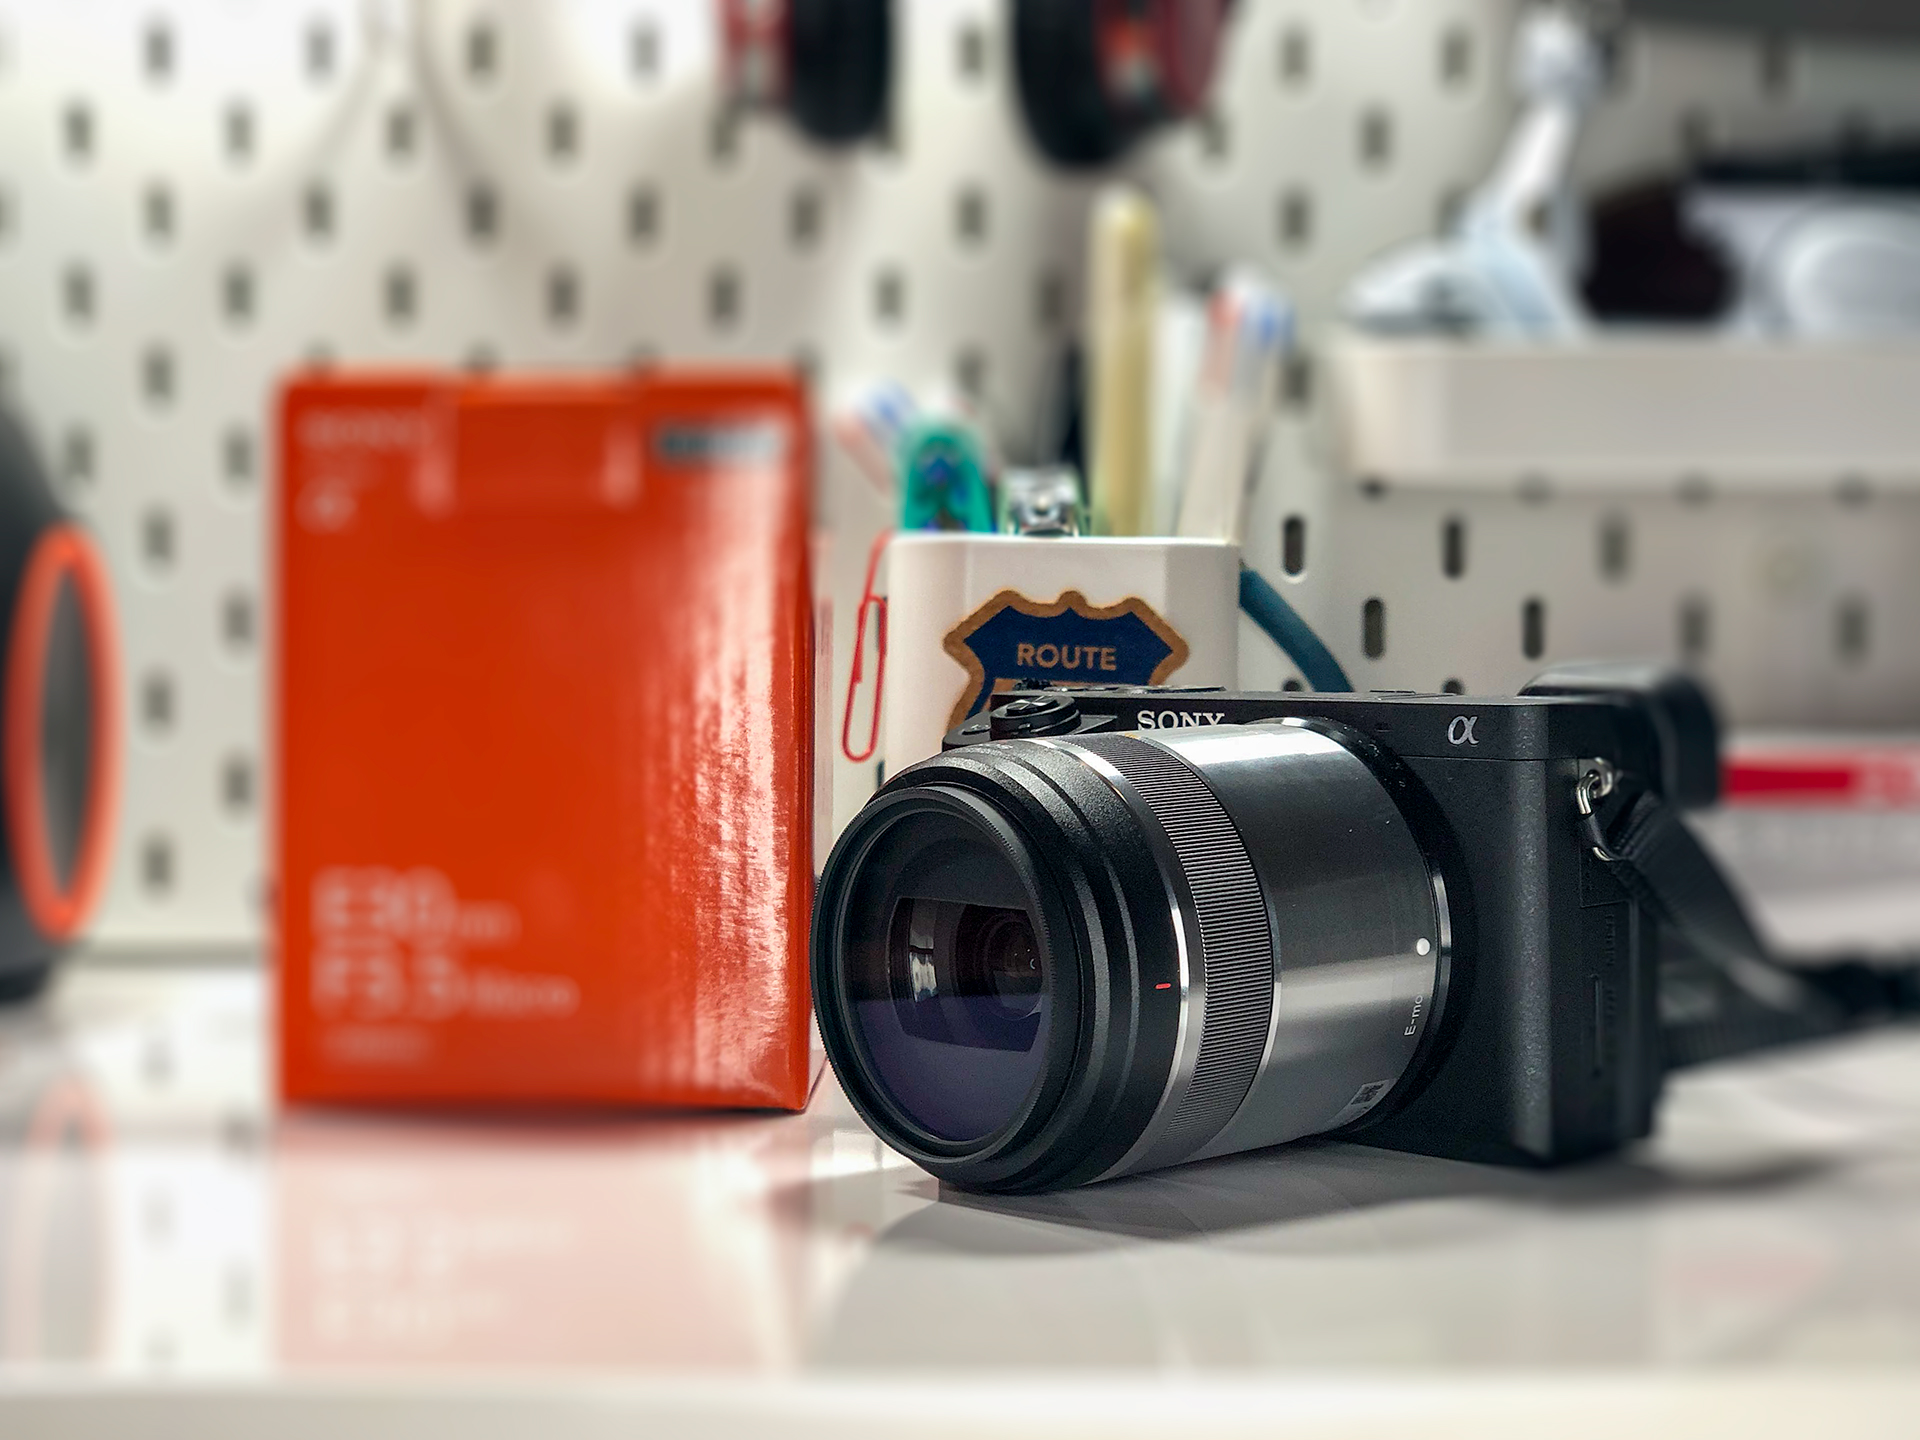 SONYの単焦点レンズ E 30mm F3.5 Macro（SEL30M35）でマクロ撮影を楽しもう